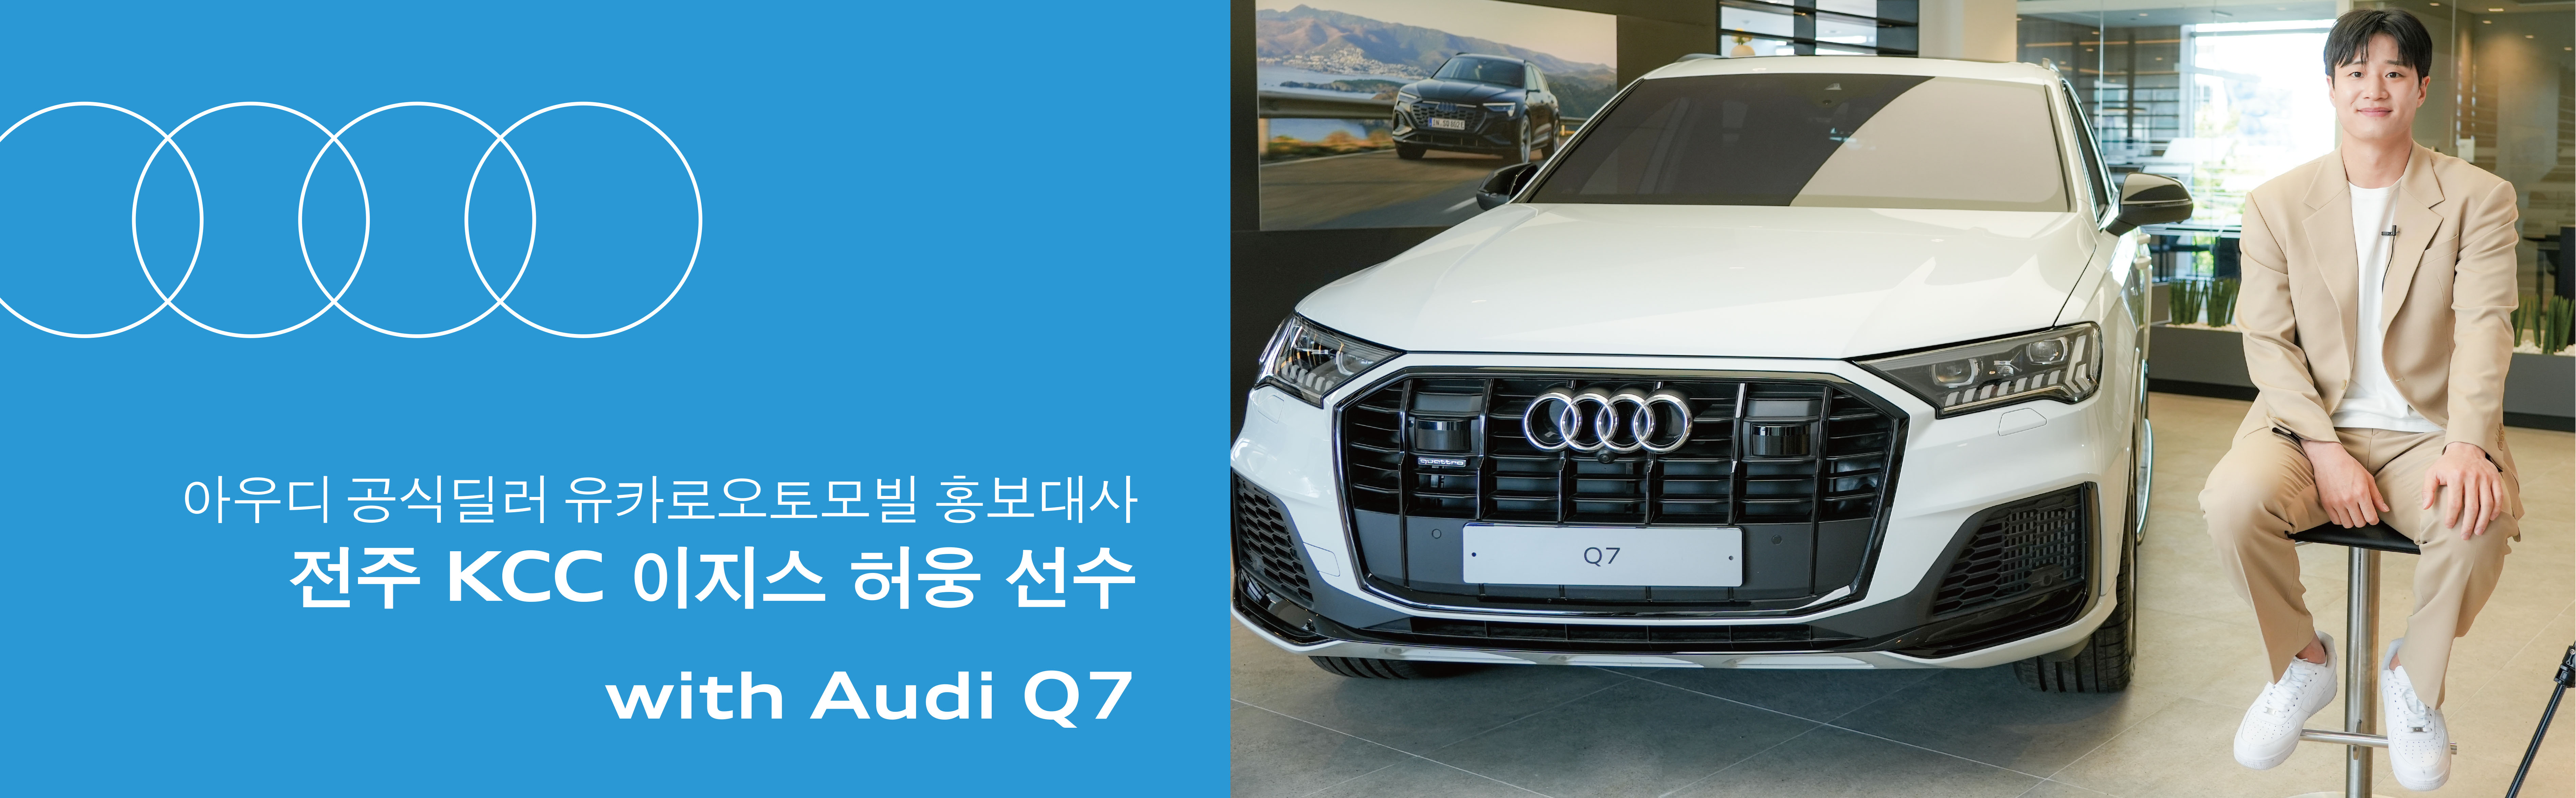 아우디 공식딜러 유카로오토모빌 홍보대사 전주 KCC 이지스 허웅 선수 with Audi Q7